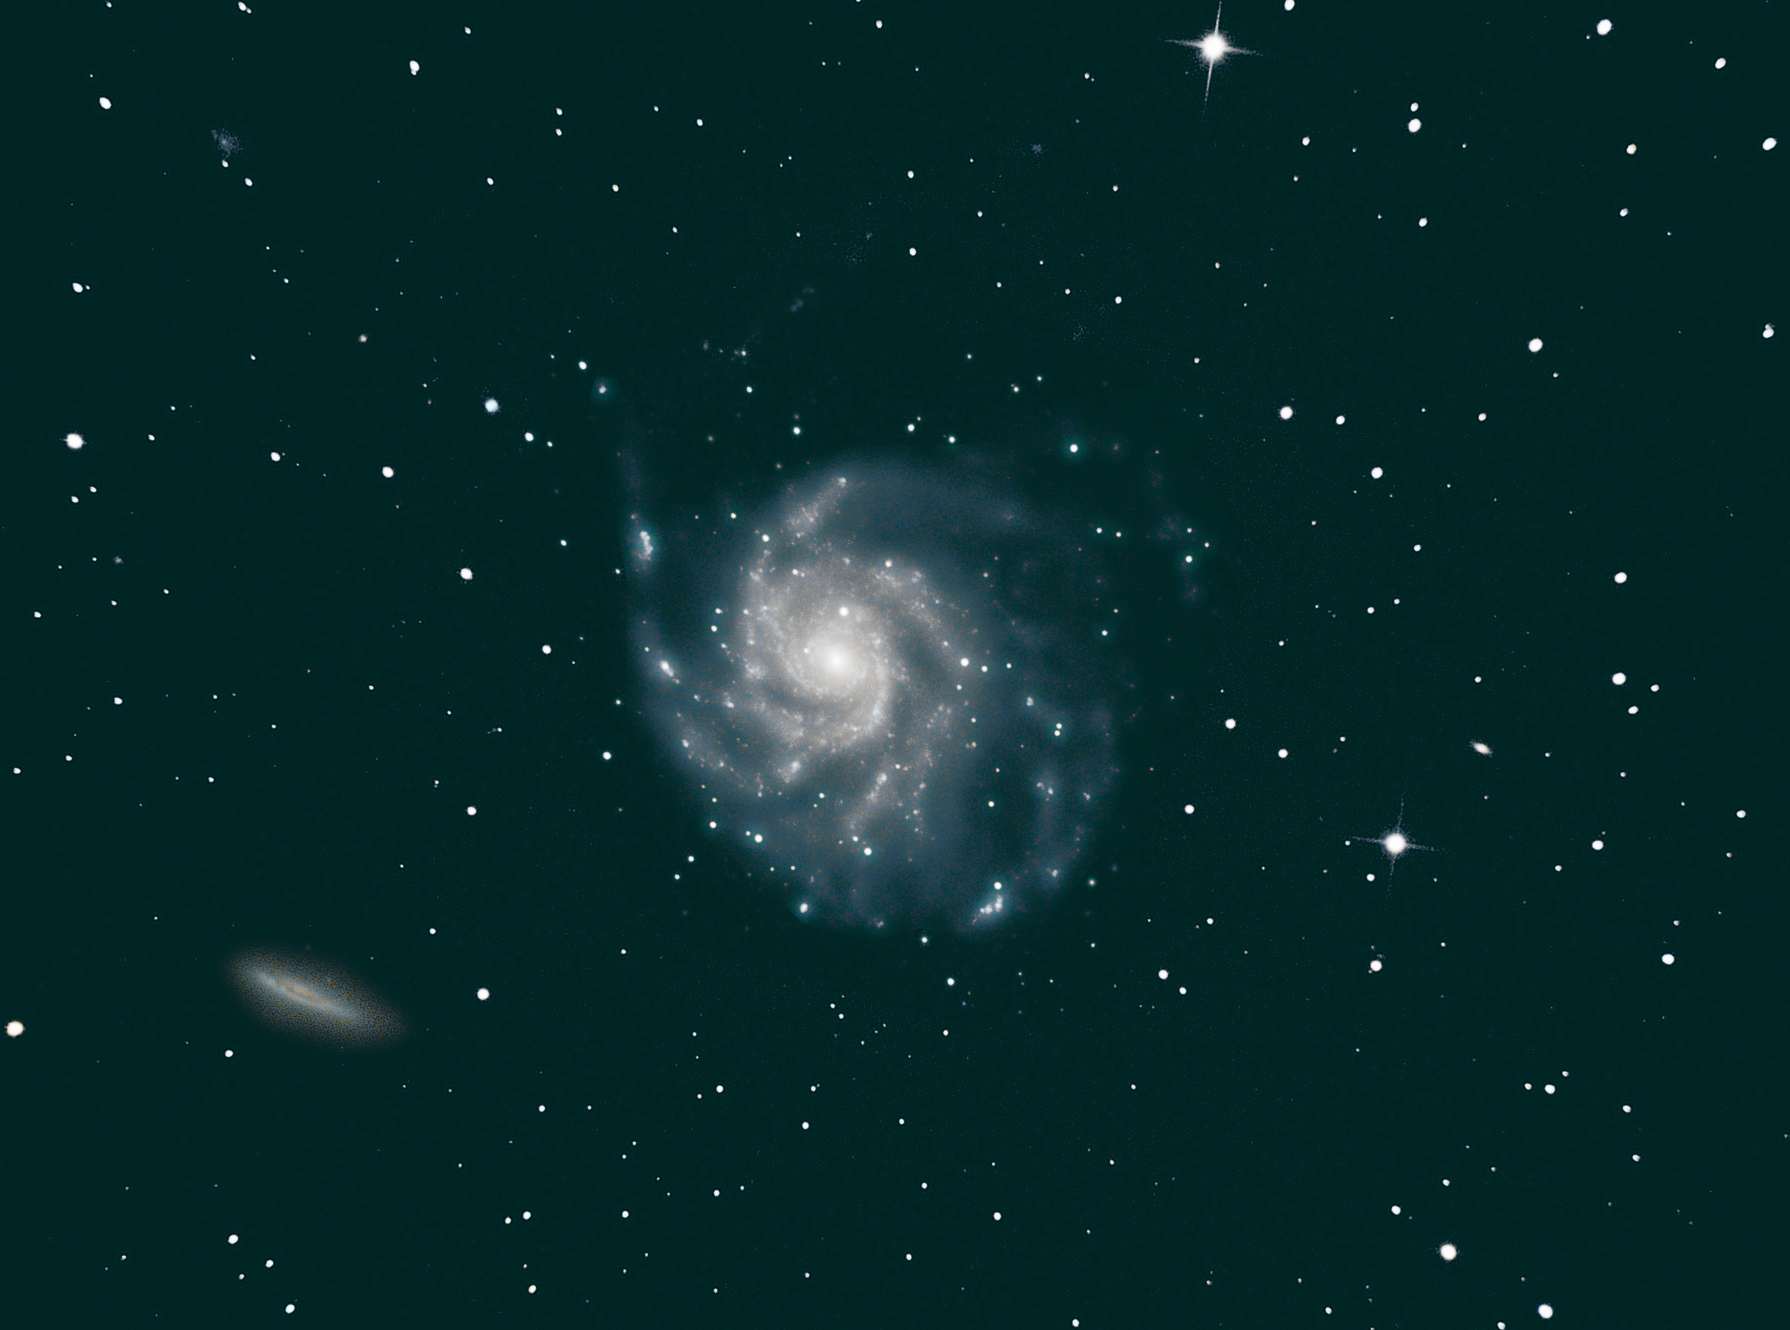 a-M101-bricolage.jpg.8fc4d4ea40f92f6ca40ddaa04d295fa1.jpg